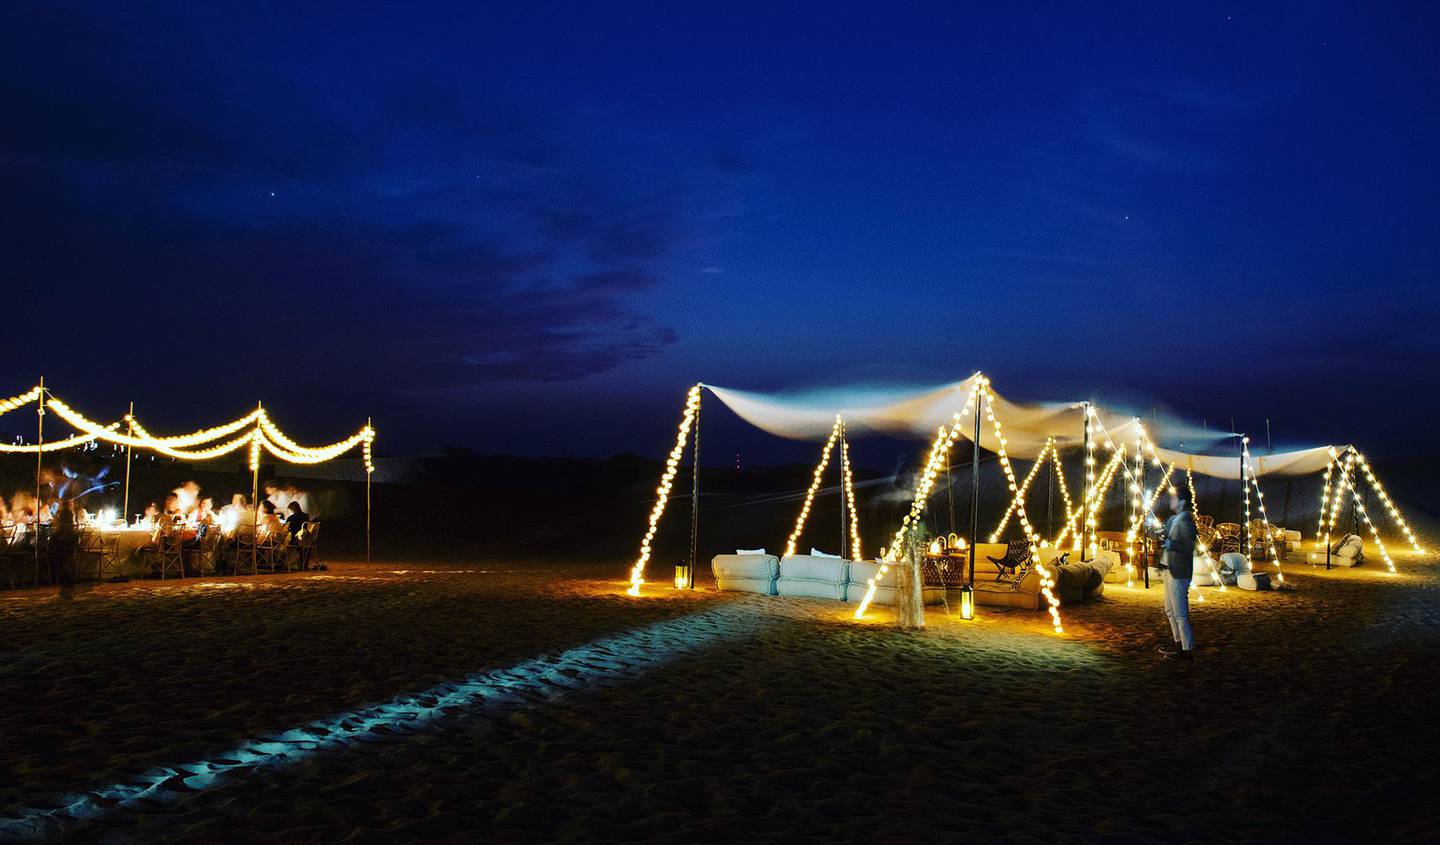 Sonara Camp, an eco-friendly desert dining experience in Dubai, has opened. Courtesy Sonara Camp 